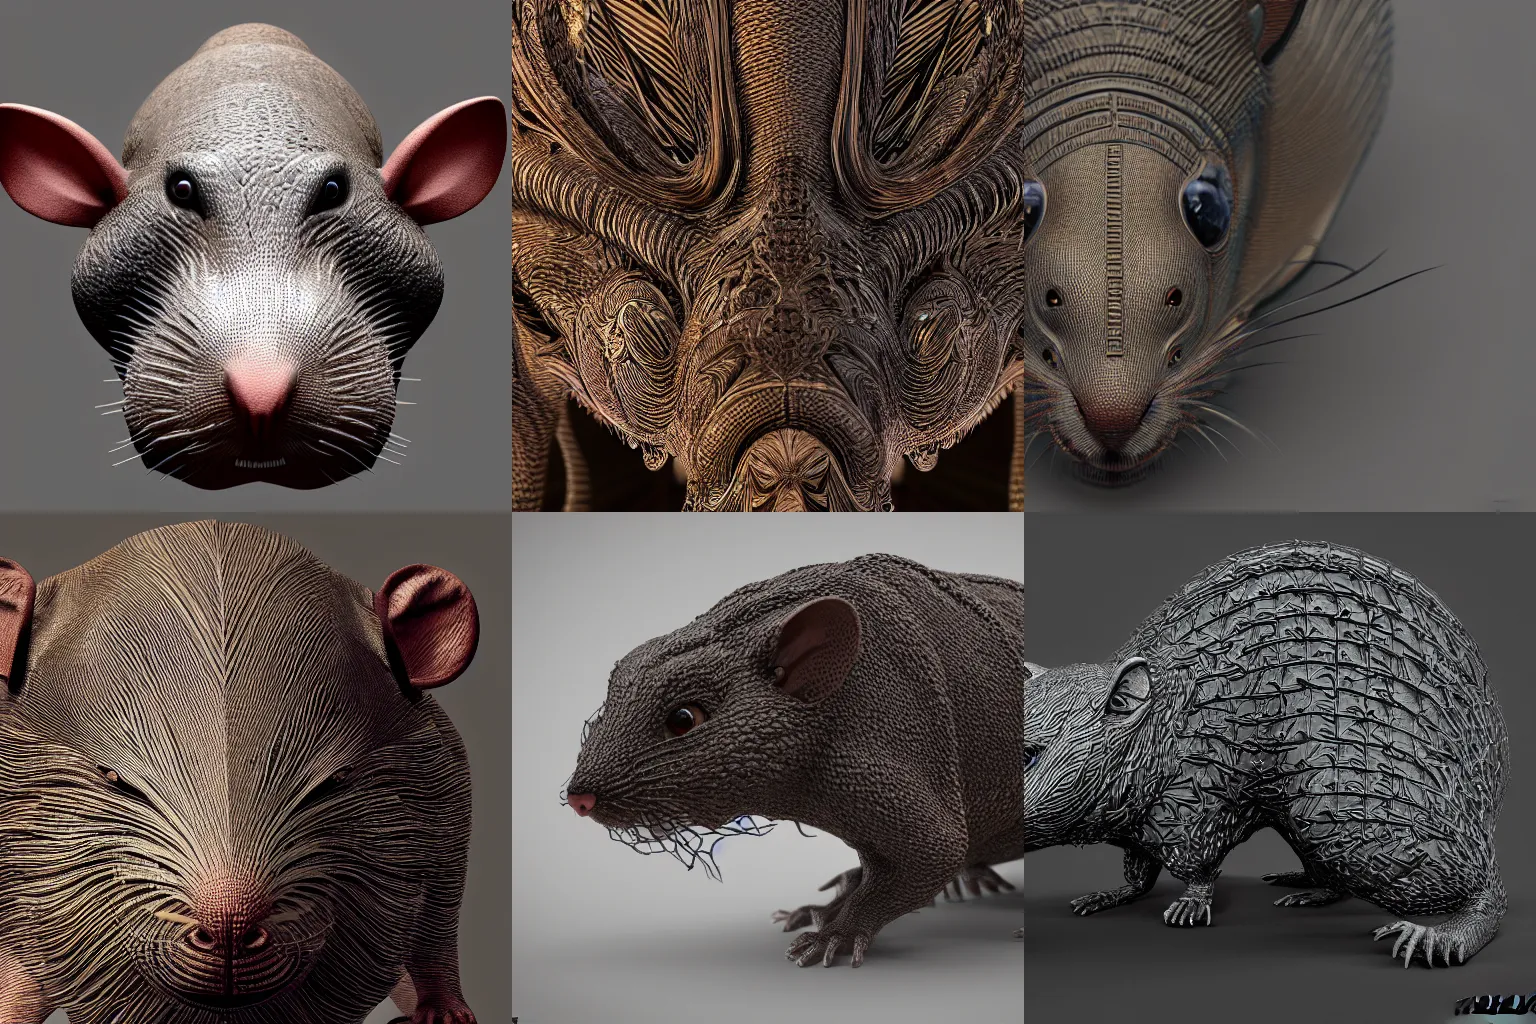 Prompt: intricate large rat, octane render, trending on artstation, hyper realism, 8k, fractals, pattern